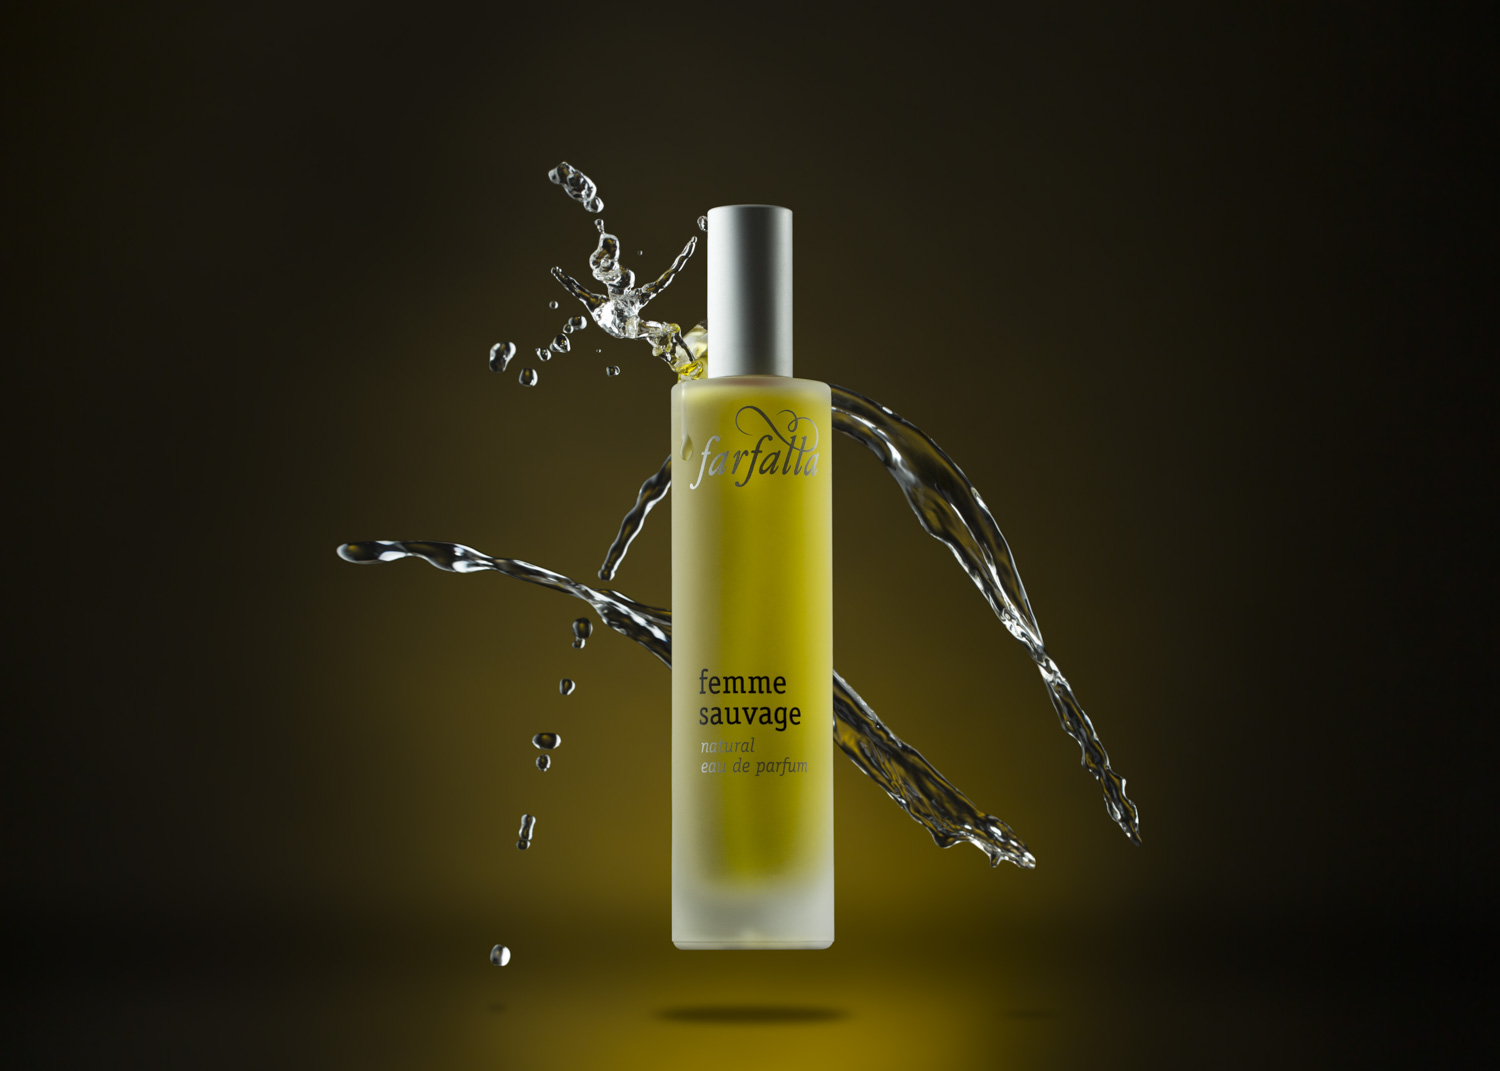 Splaschfotografie-von-parfumflasche-auf-gelb-und-schwarzen-hintergrund